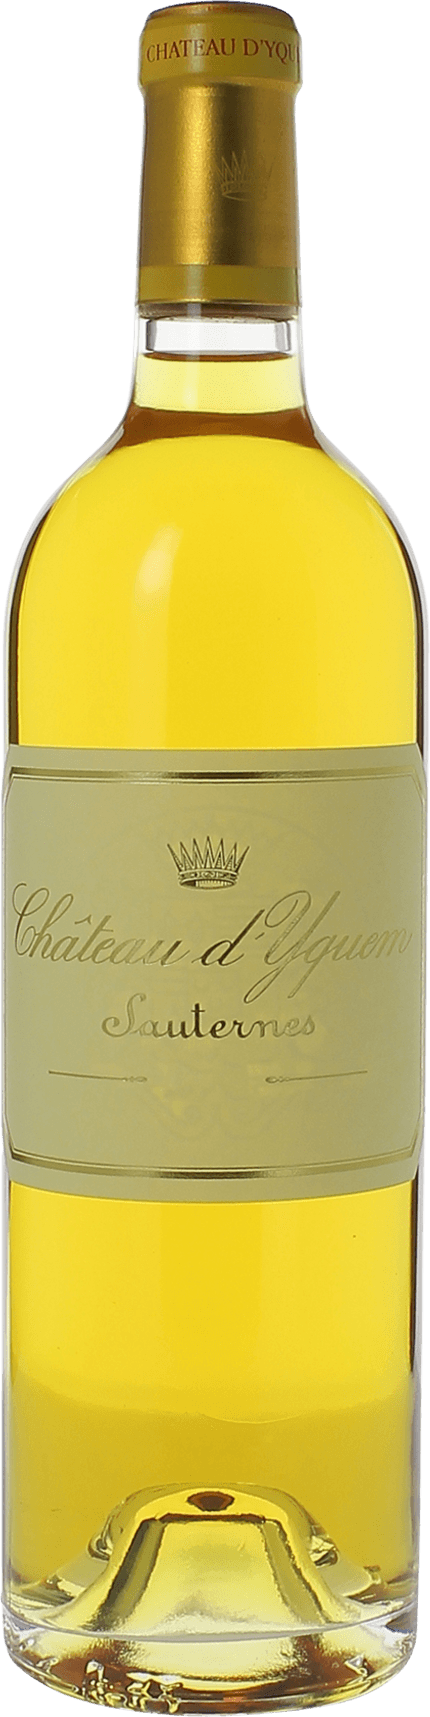 Yquem 1988 1er Cru Suprieur Sauternes, Bordeaux blanc